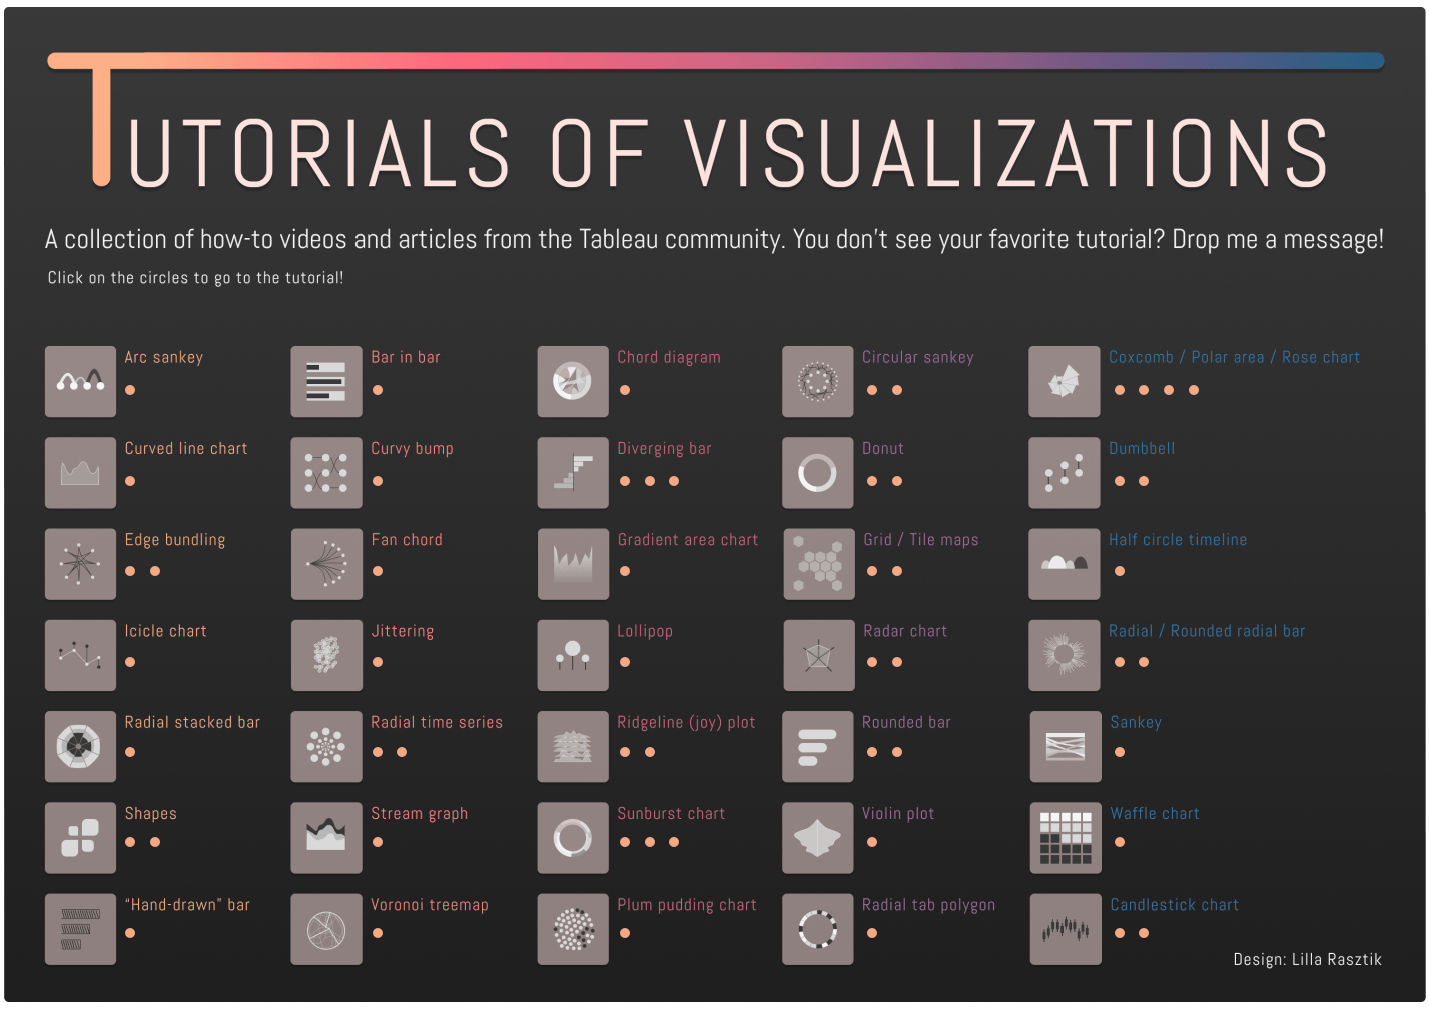 Tutorials of Visualizations by Lilla Rasztik